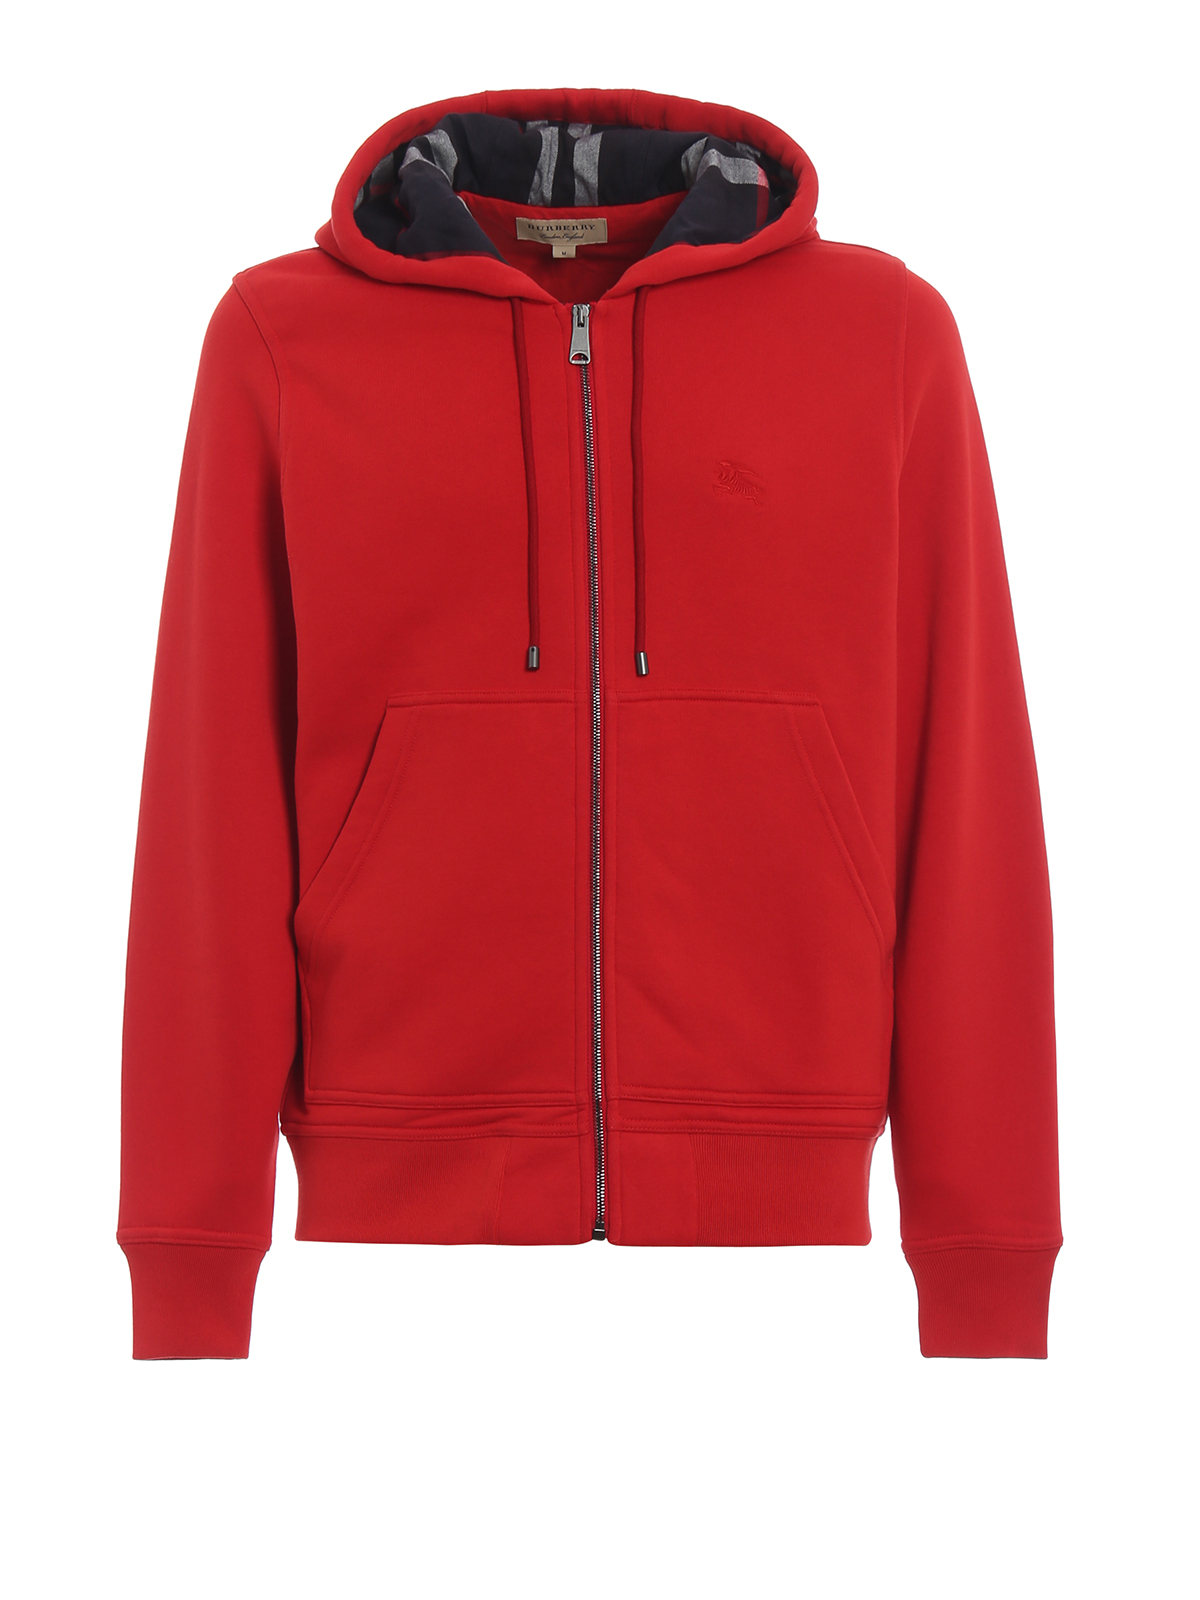 Fordson red hoodie - Sweatshirts 